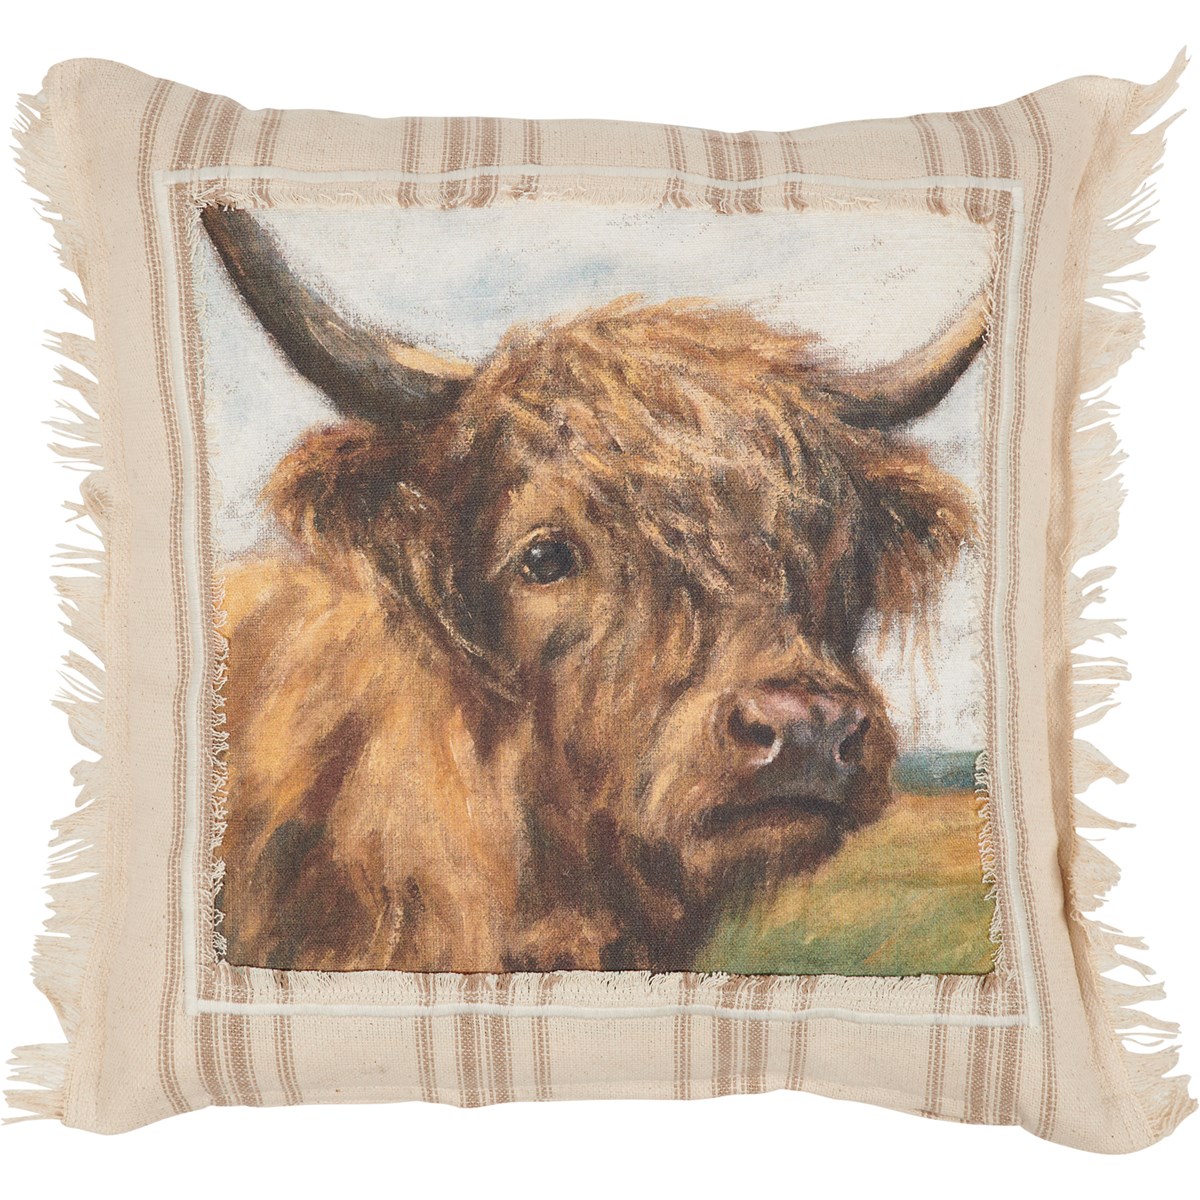 Highland Cow Pillow - Cotton, Zipper